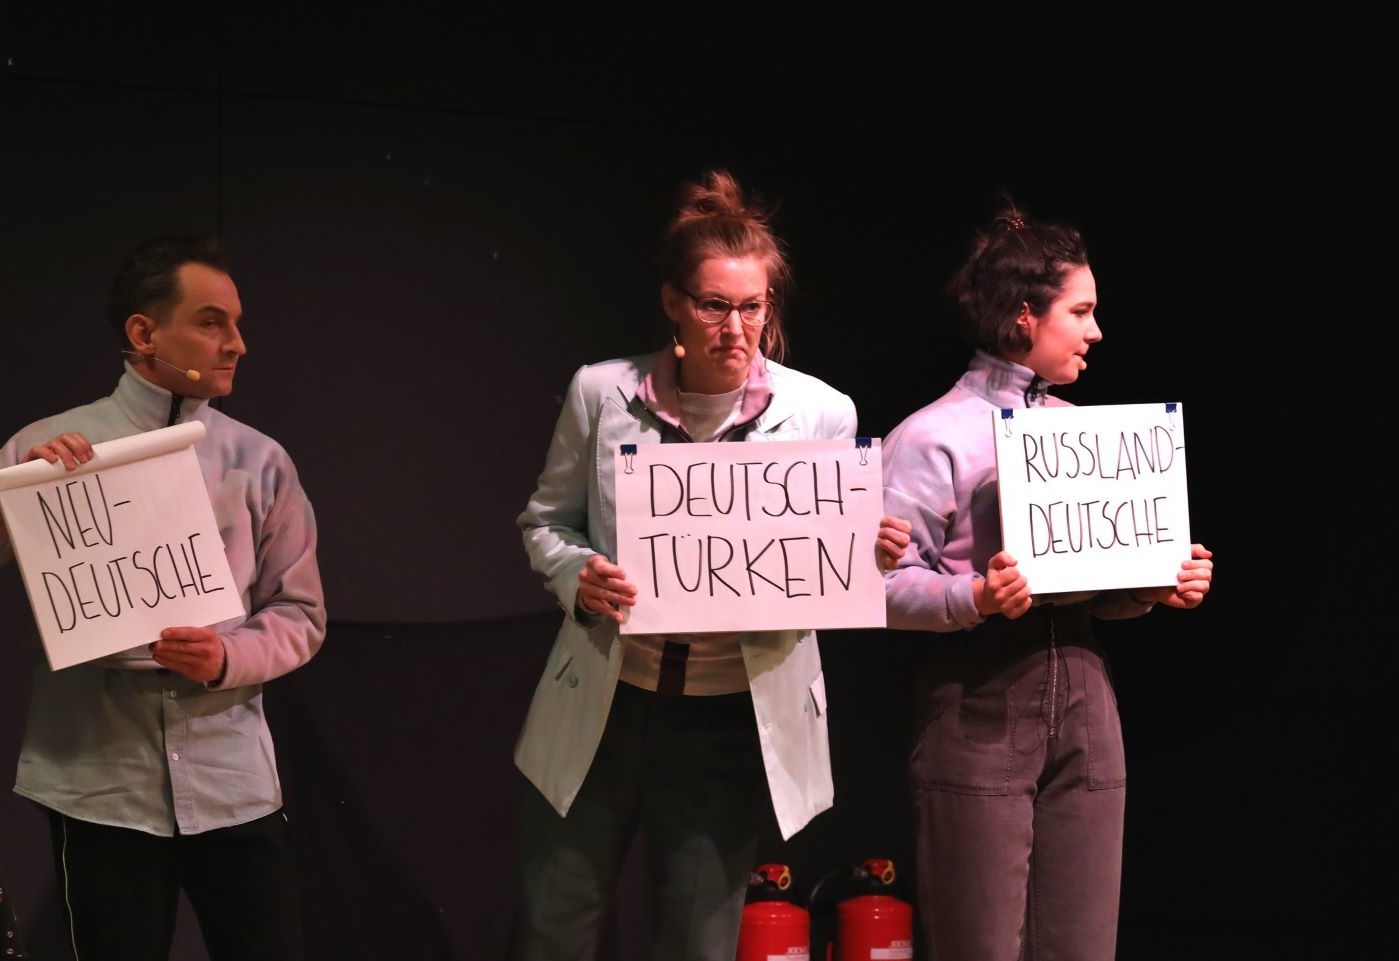 Schauspieler*innen aus "Unterscheidet euch!" auf der Bühne halten Schilder in der Hand, auf der unterschiedliche Begriffe zur Sortierung bzw. Zuordnung stehen.